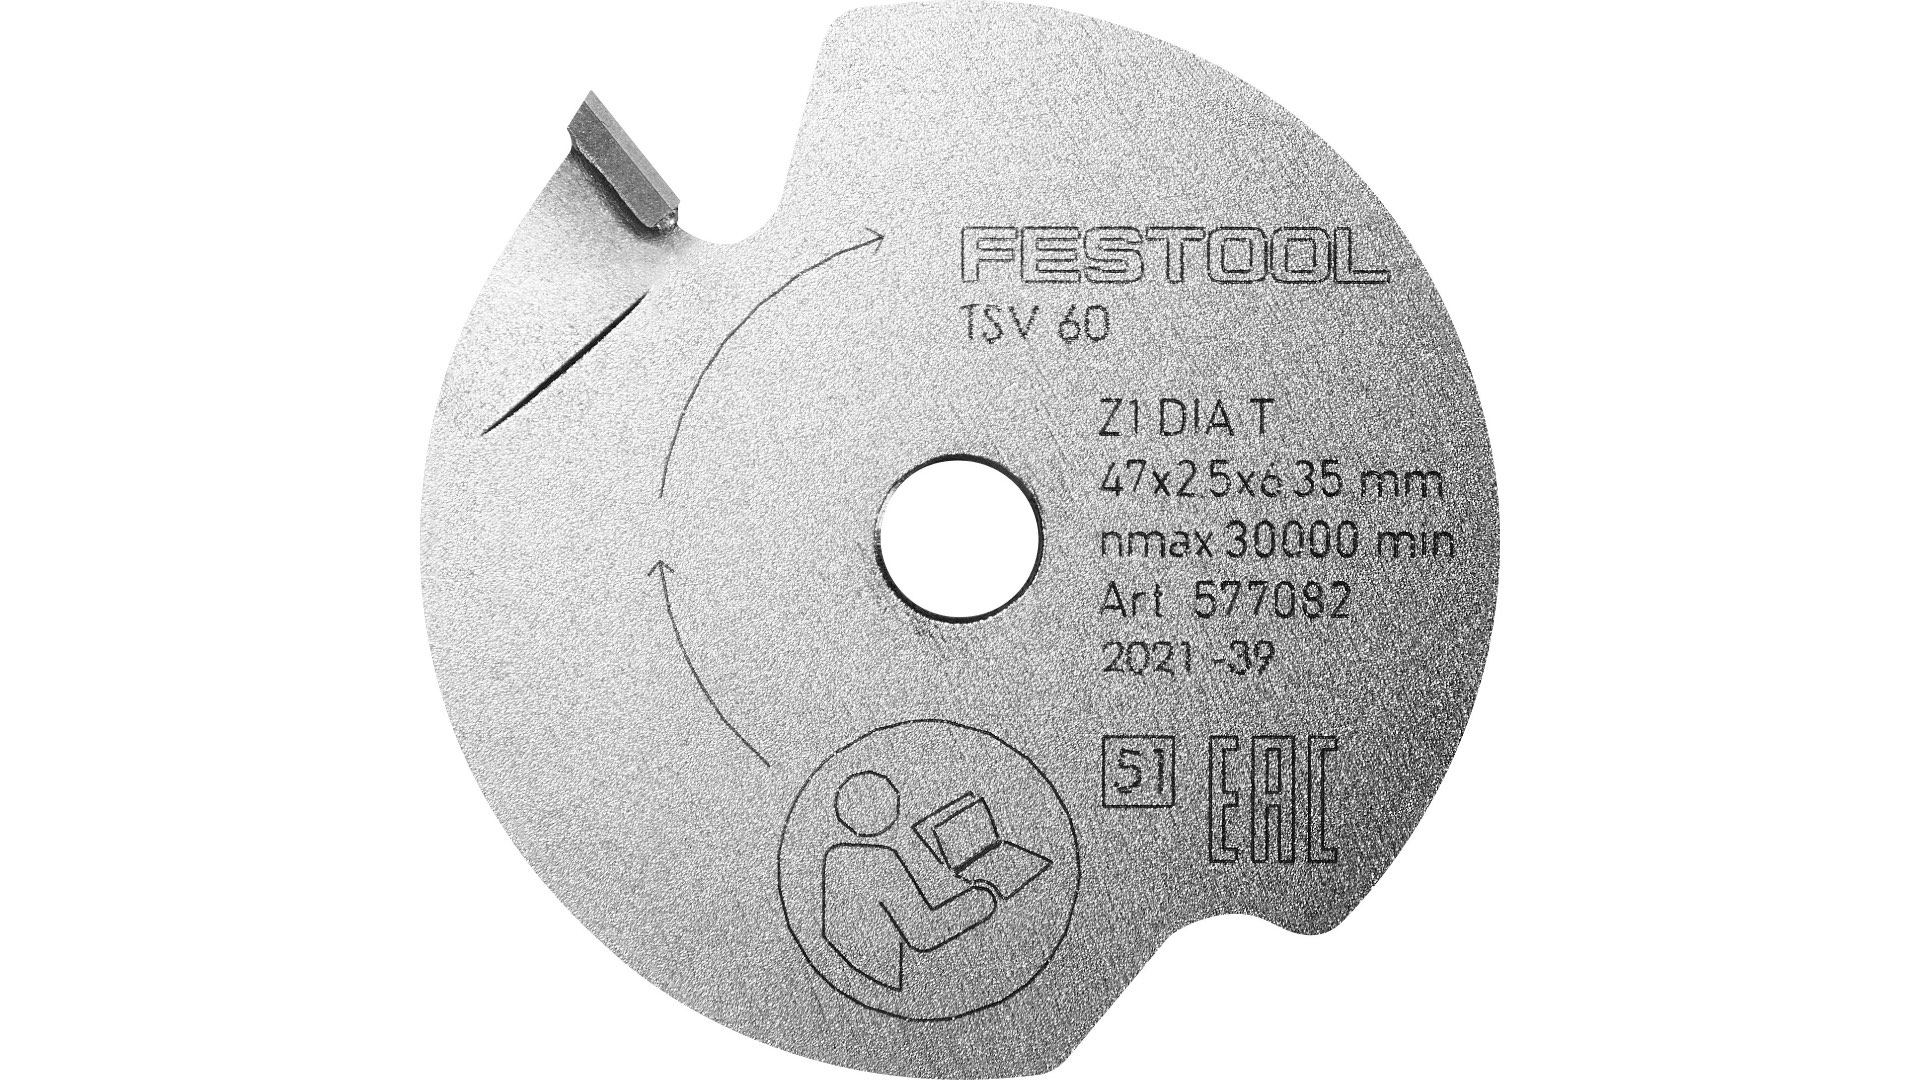 Пильный диск подрезной Festool DIA 47x2,5x6,35 T1 577082 подрезной пильный алмазный диск rotis